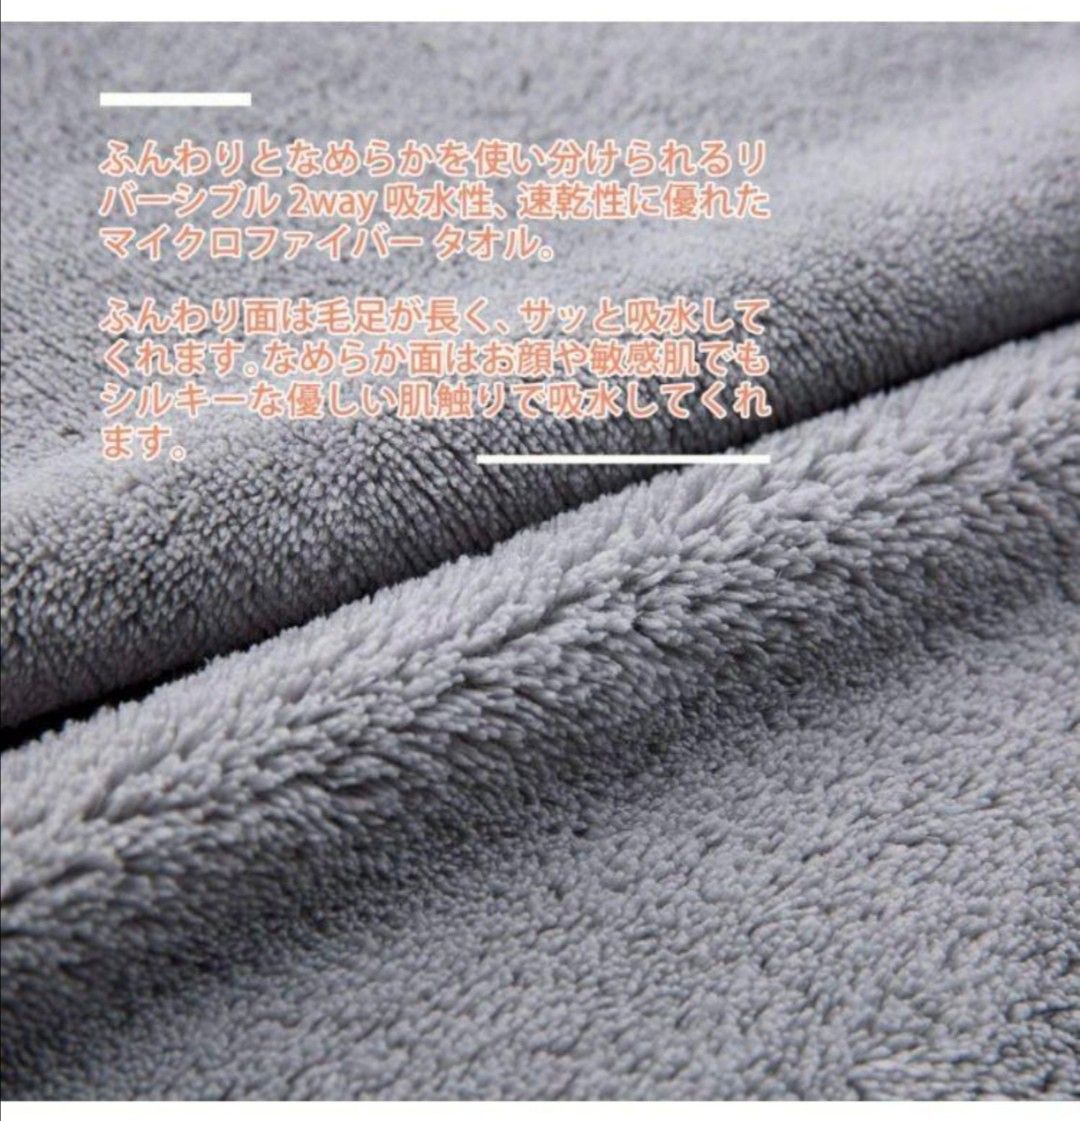 バスタオル 大判 5色5 枚セット マイクロファイバー タオル 吸水速乾抗菌防臭